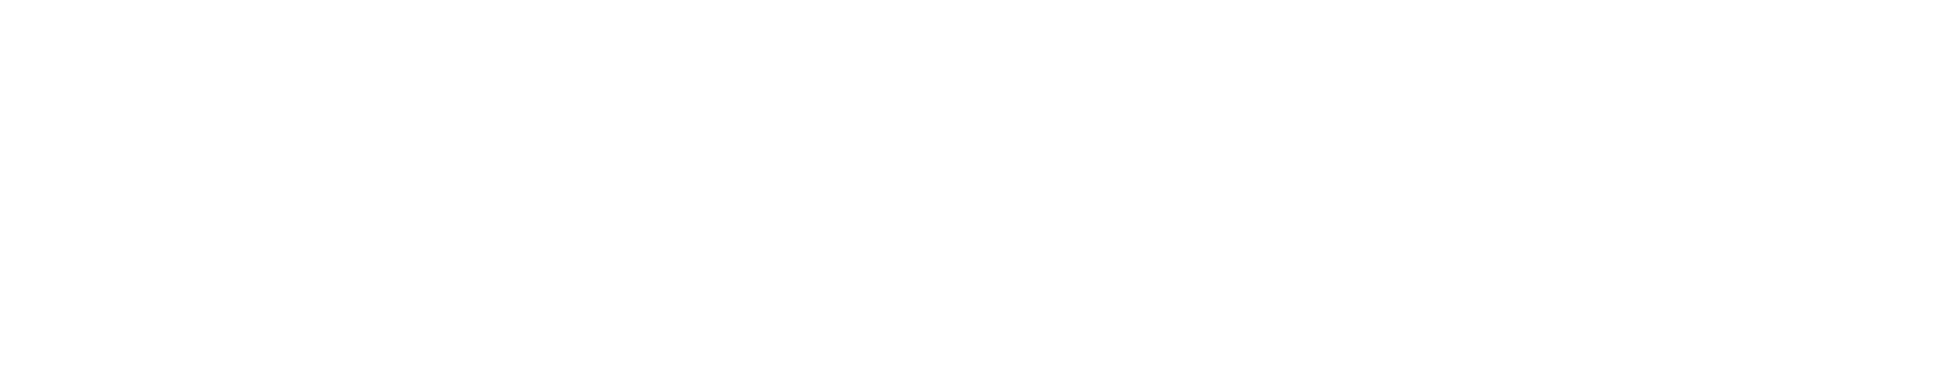 sdgs-logo-top